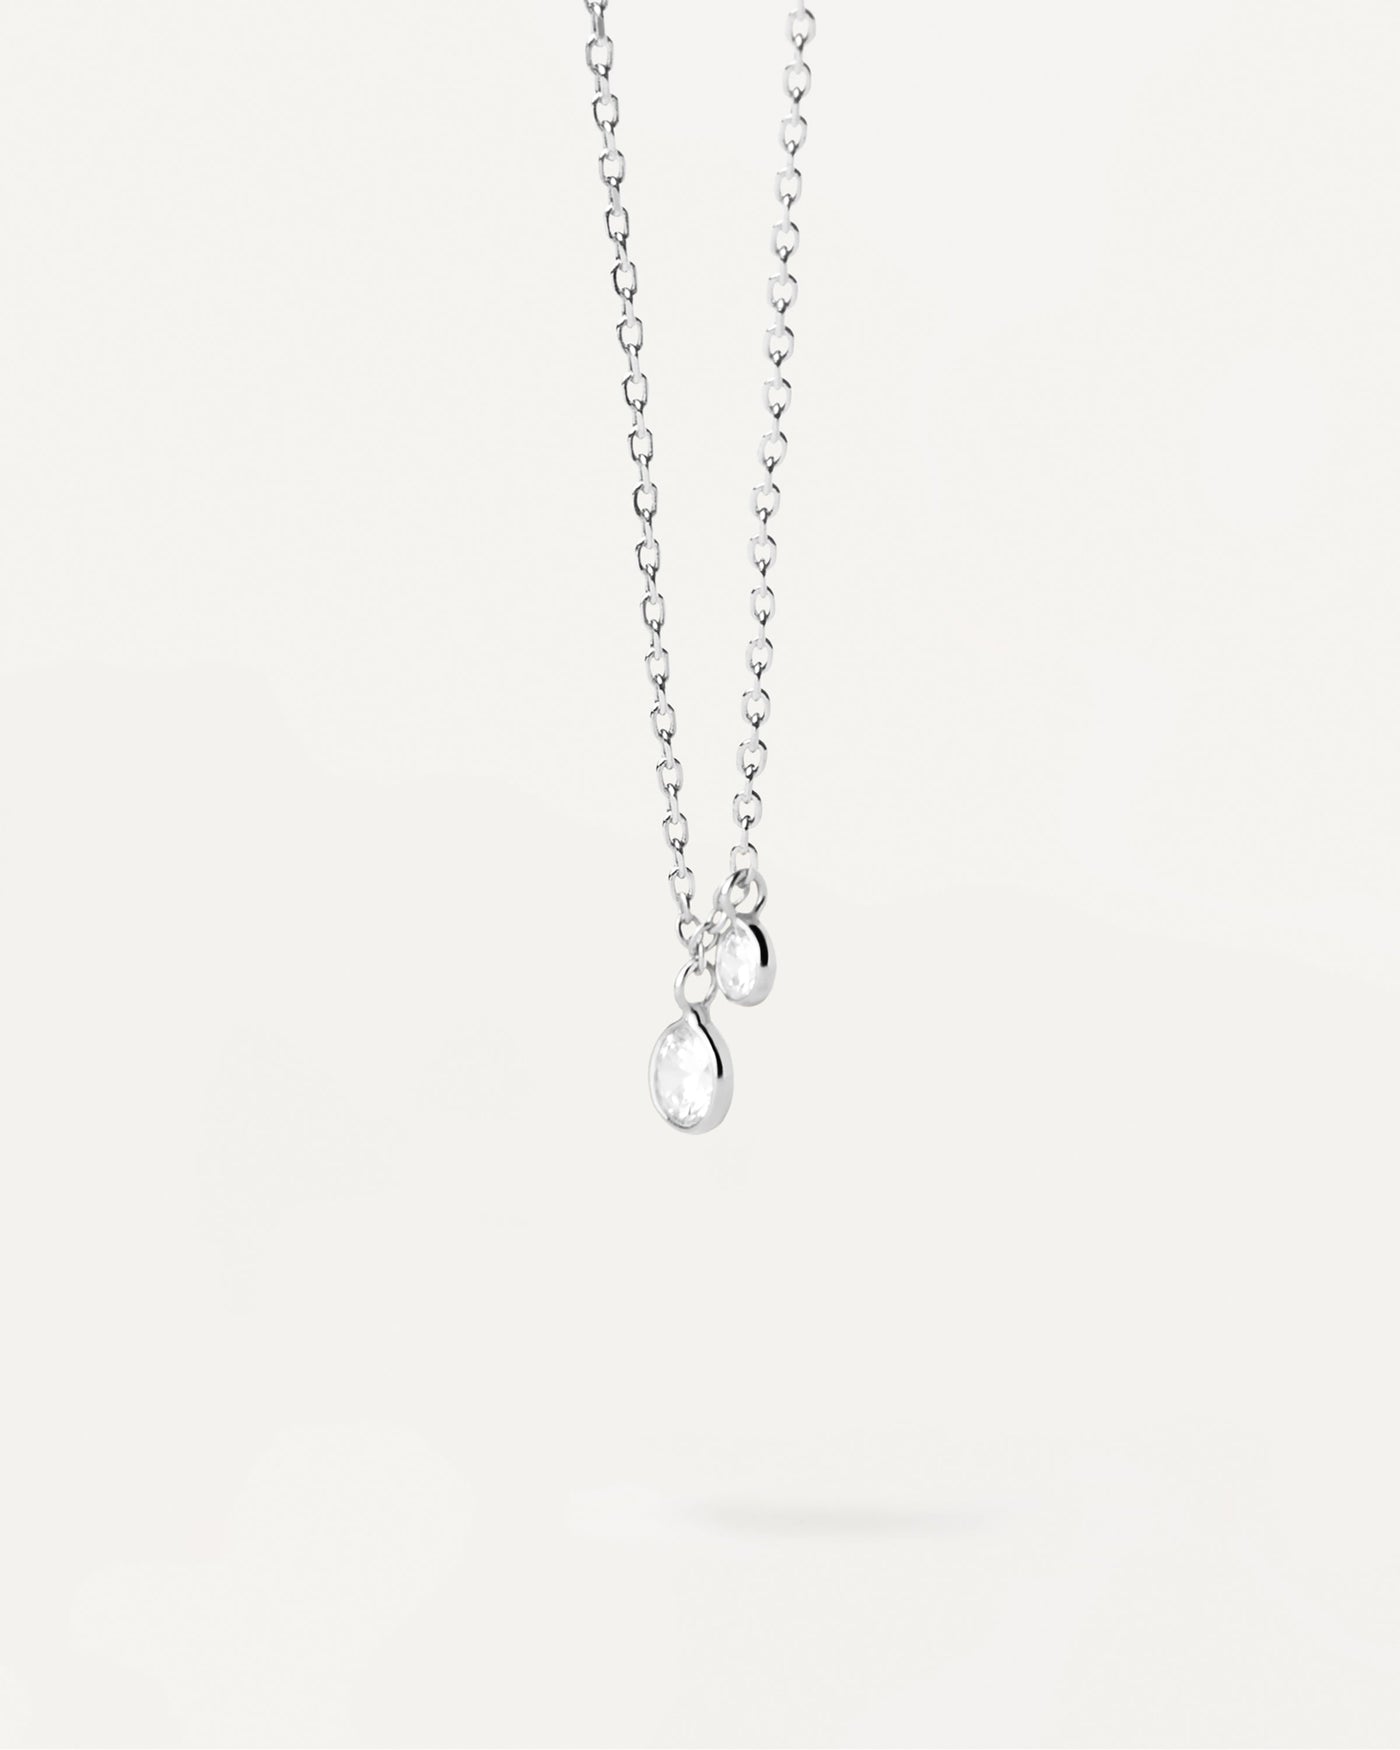 Bliss Silberhalskette. Elegante Halskette mit 2 runden Zirkonia-Anhängern, gefasst in Kreise aus Sterlingsilber. Erhalten Sie die neuesten Produkte von PDPAOLA. Geben Sie Ihre Bestellung sicher auf und erhalten Sie diesen Bestseller.